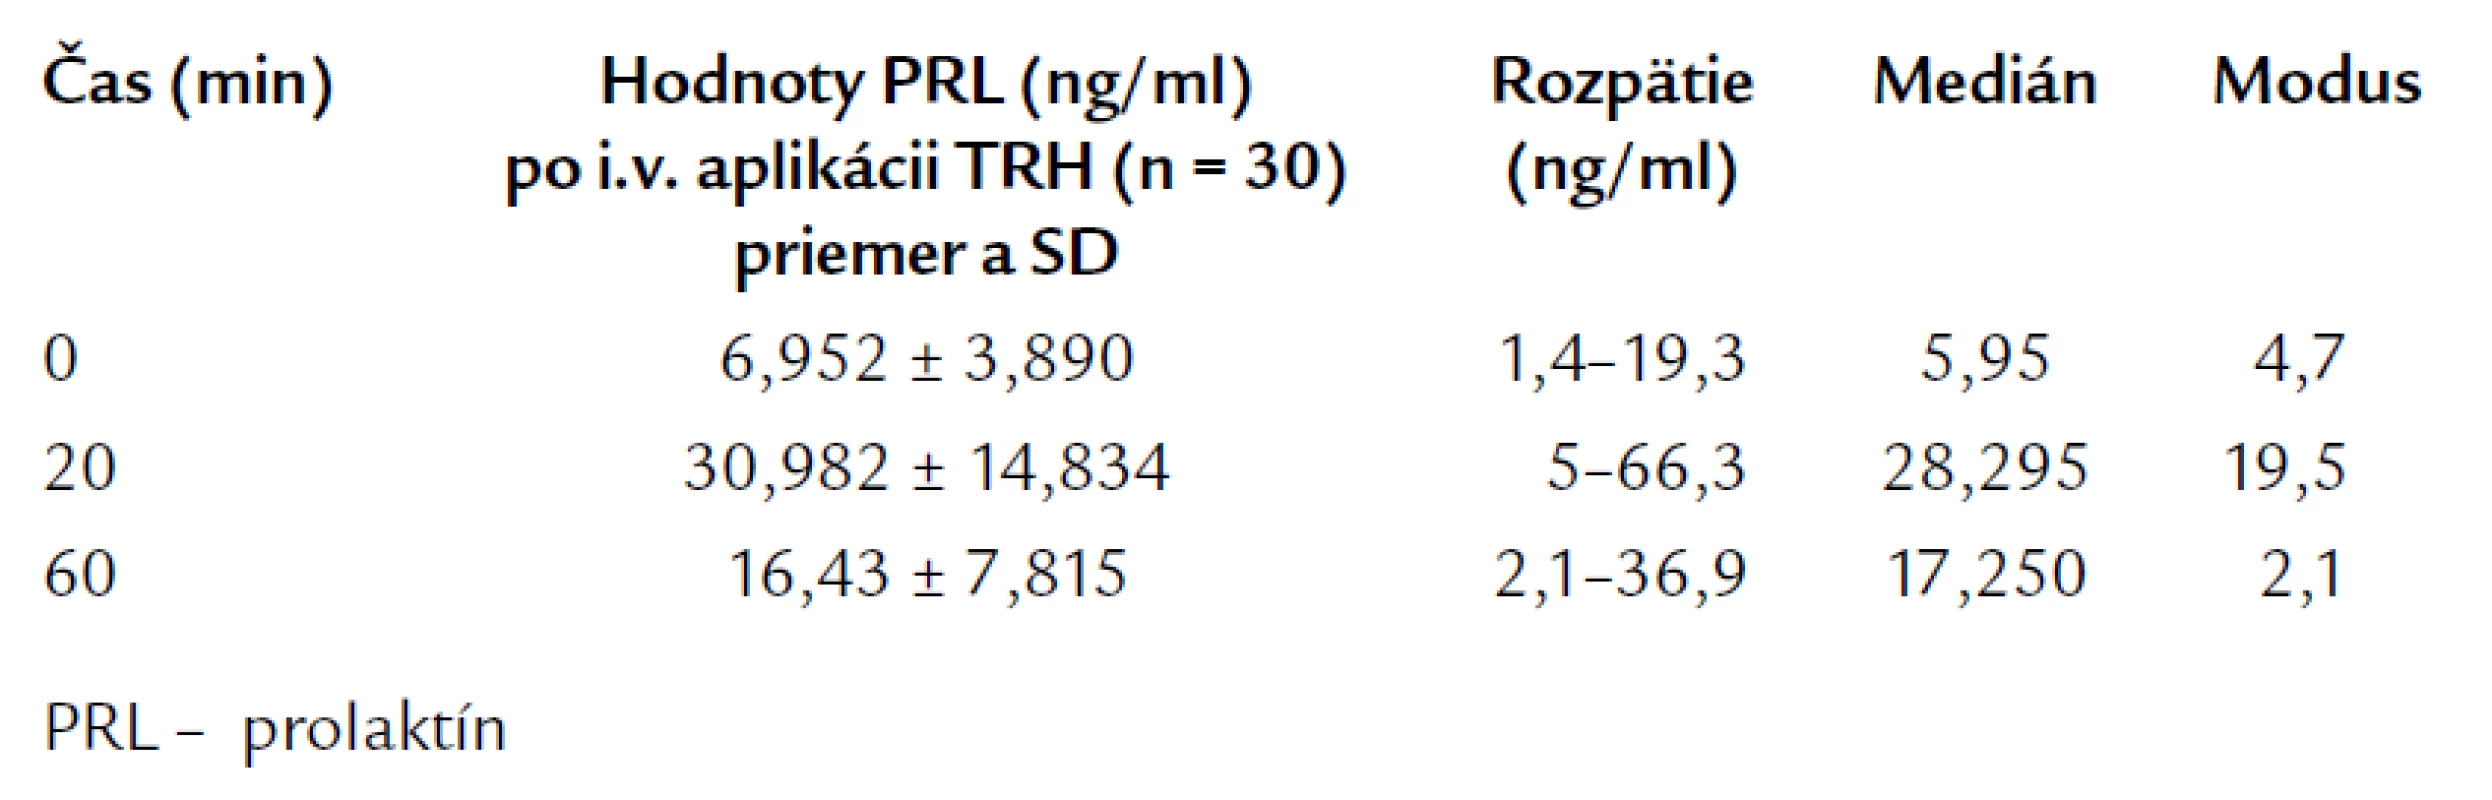 Bazálne a TRH testom stimulované hodnoty PRL u kontrolnej skupiny.